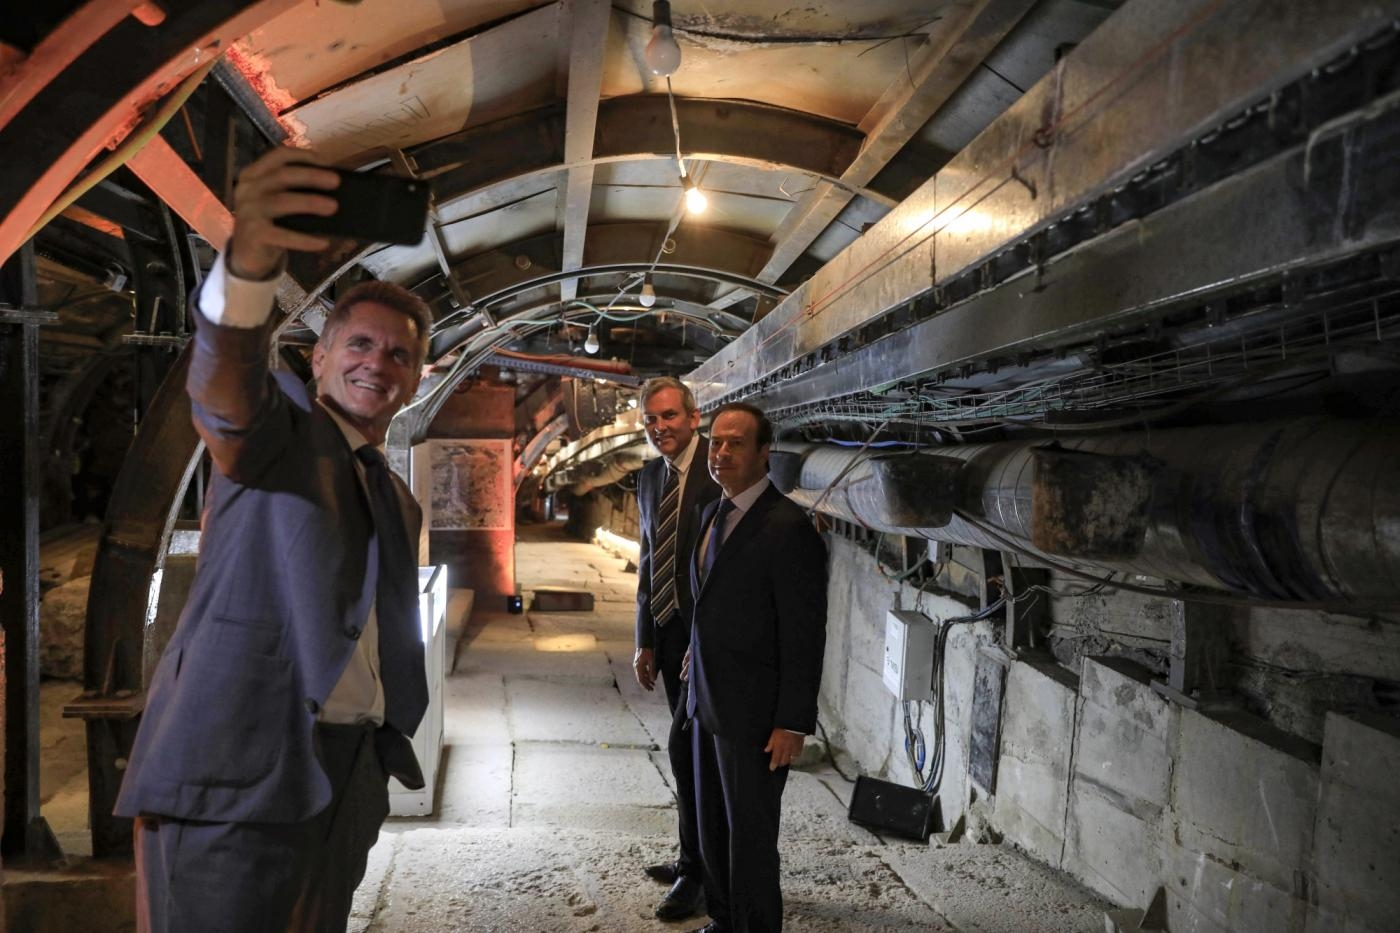 Un homme prend un selfie lors de l’ouverture d’un tunnel dans la « Cité de David », un site archéologique et touristique israélien dans le quartier palestinien de Silwan, à Jérusalem-Est occupée, le 30 juin 2019 (AFP)